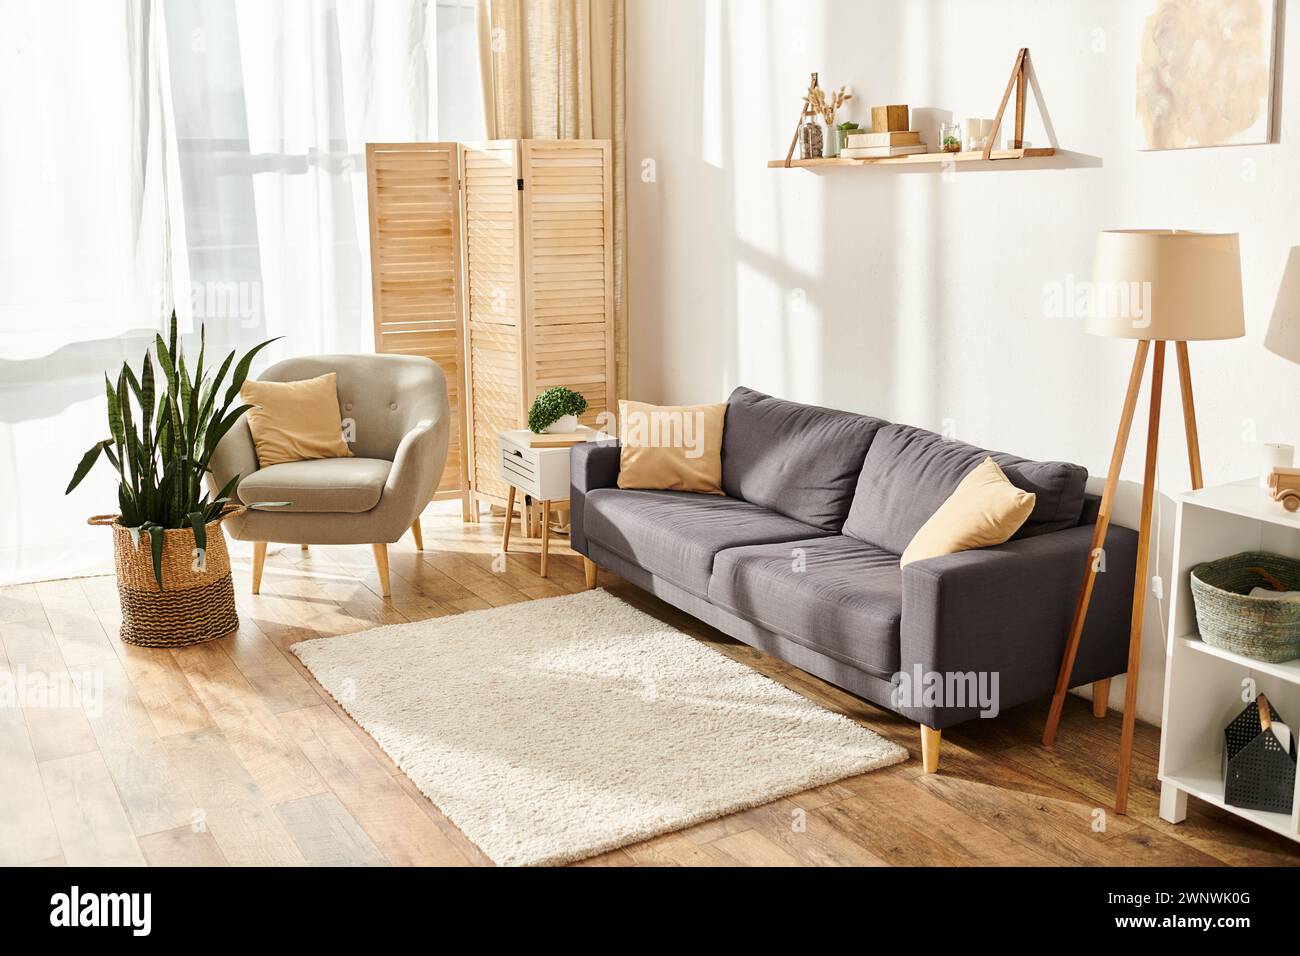 Objektfoto eines modernen, gut eingerichteten Wohnzimmers mit Sofa und Sessel in Pastelltönen Stockfoto